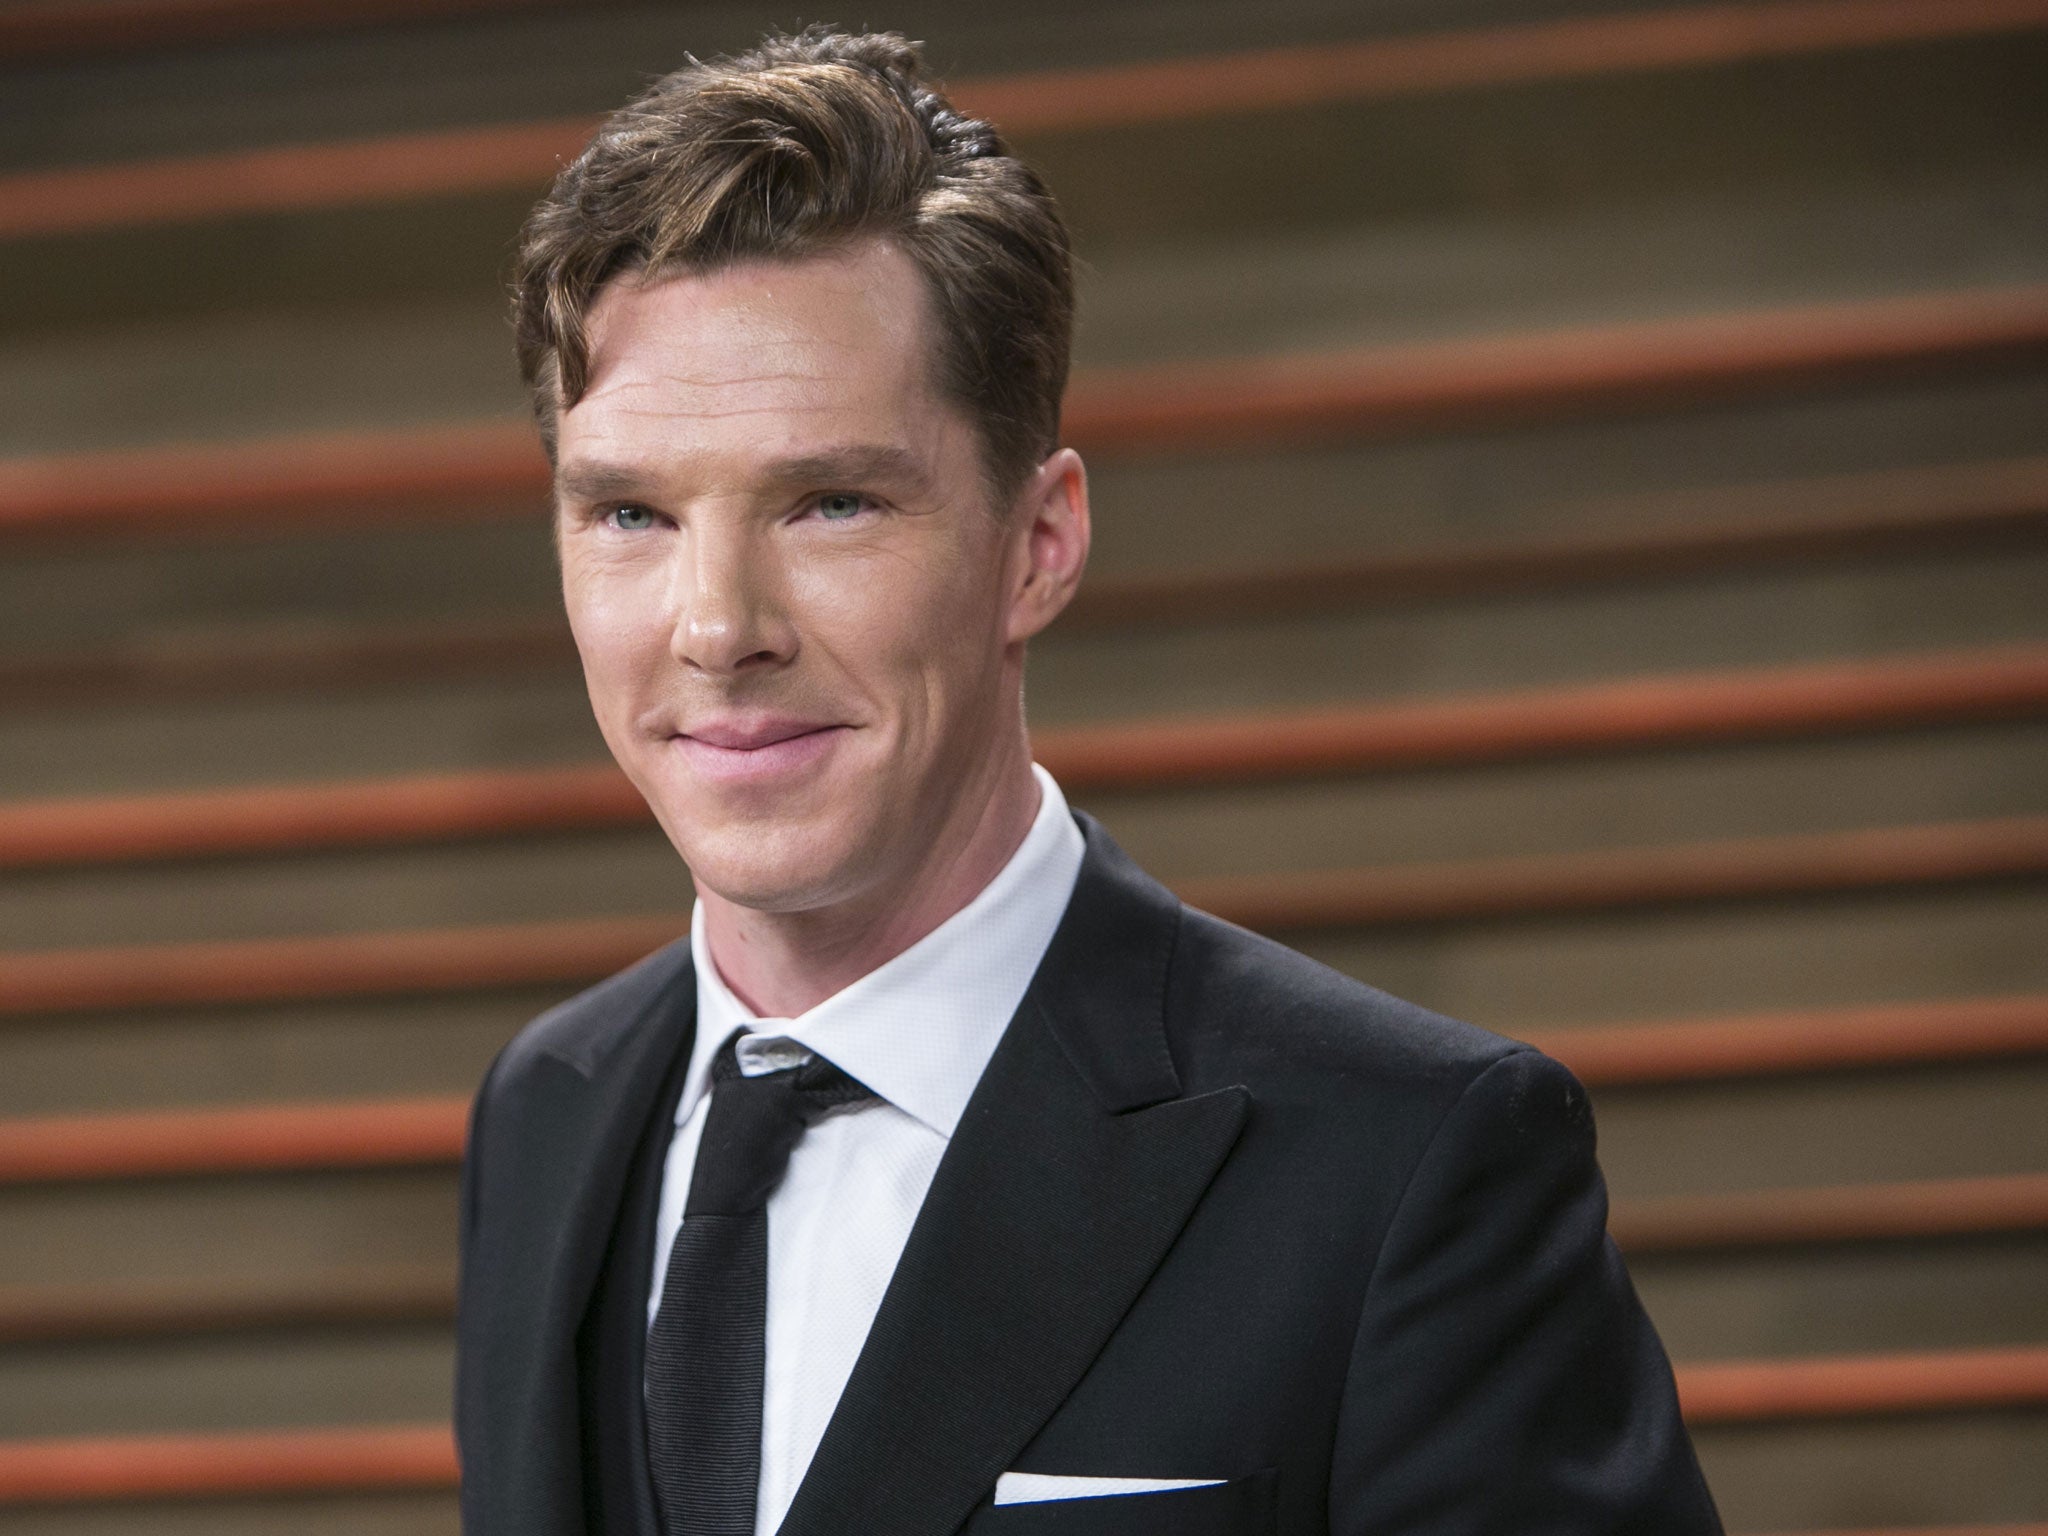 Benedict Cumberbatch plays genius codebreaker Alan Turing in The Imitation Game